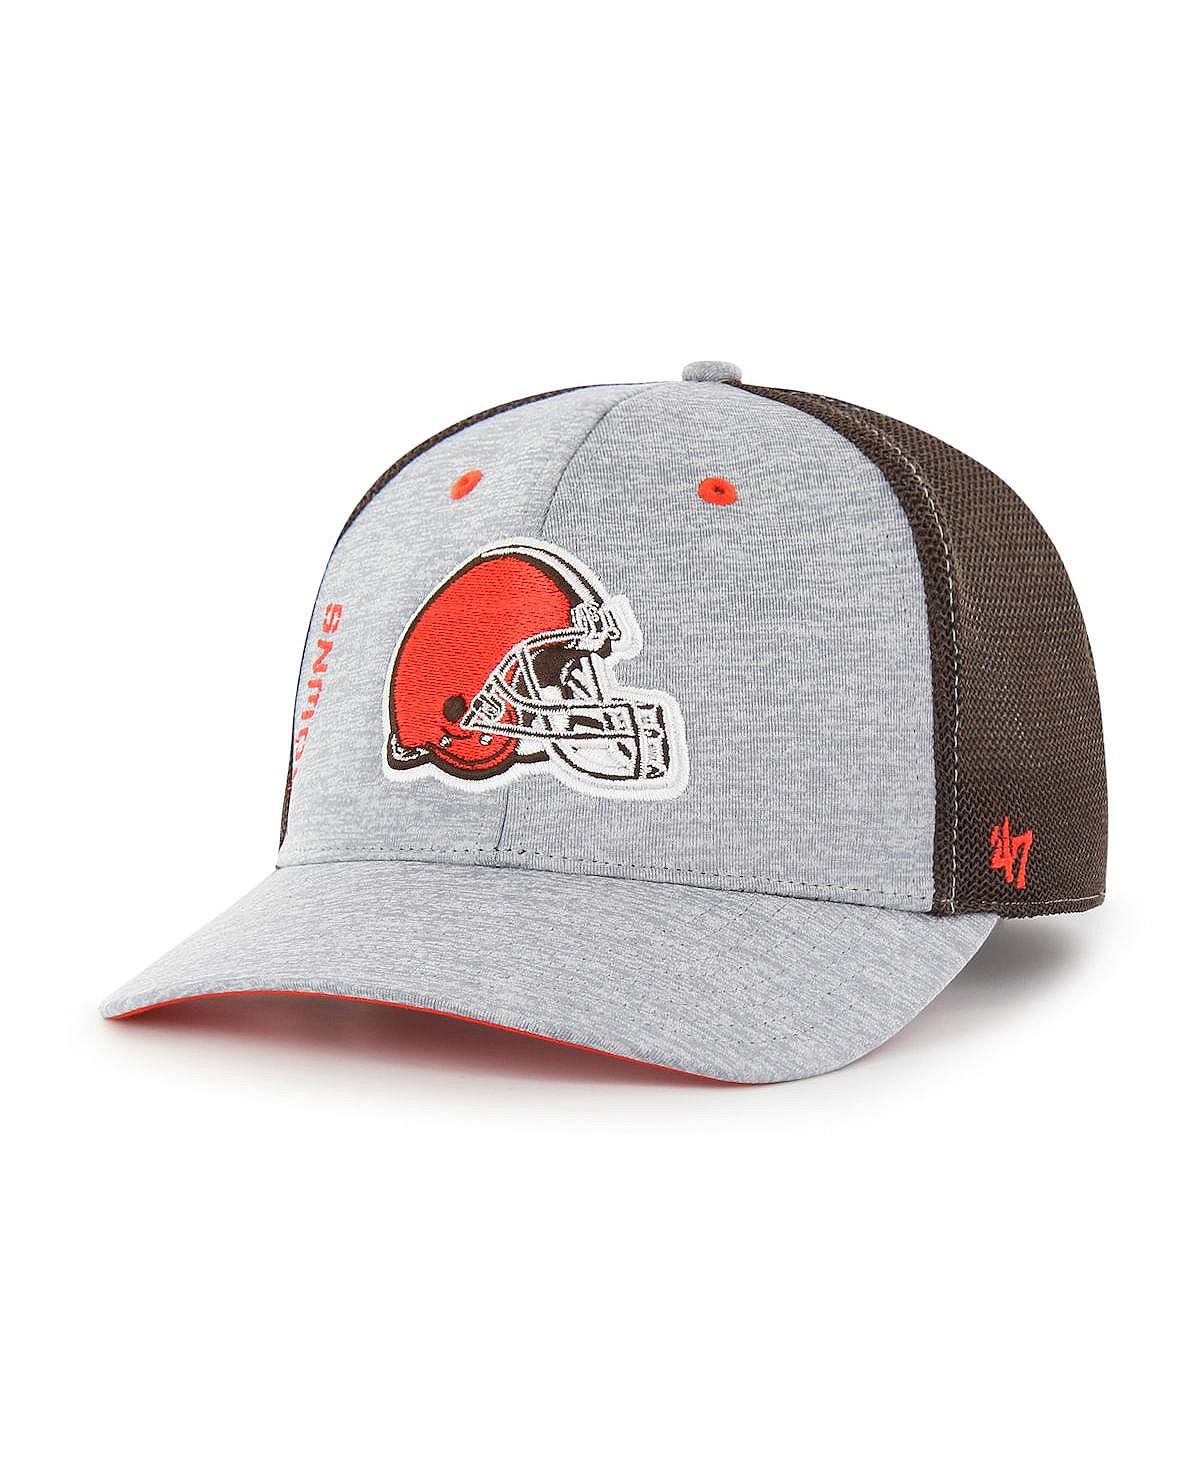 Мужская серо-коричневая шляпа Cleveland Browns Pixelation Trophy Flex. '47 Brand